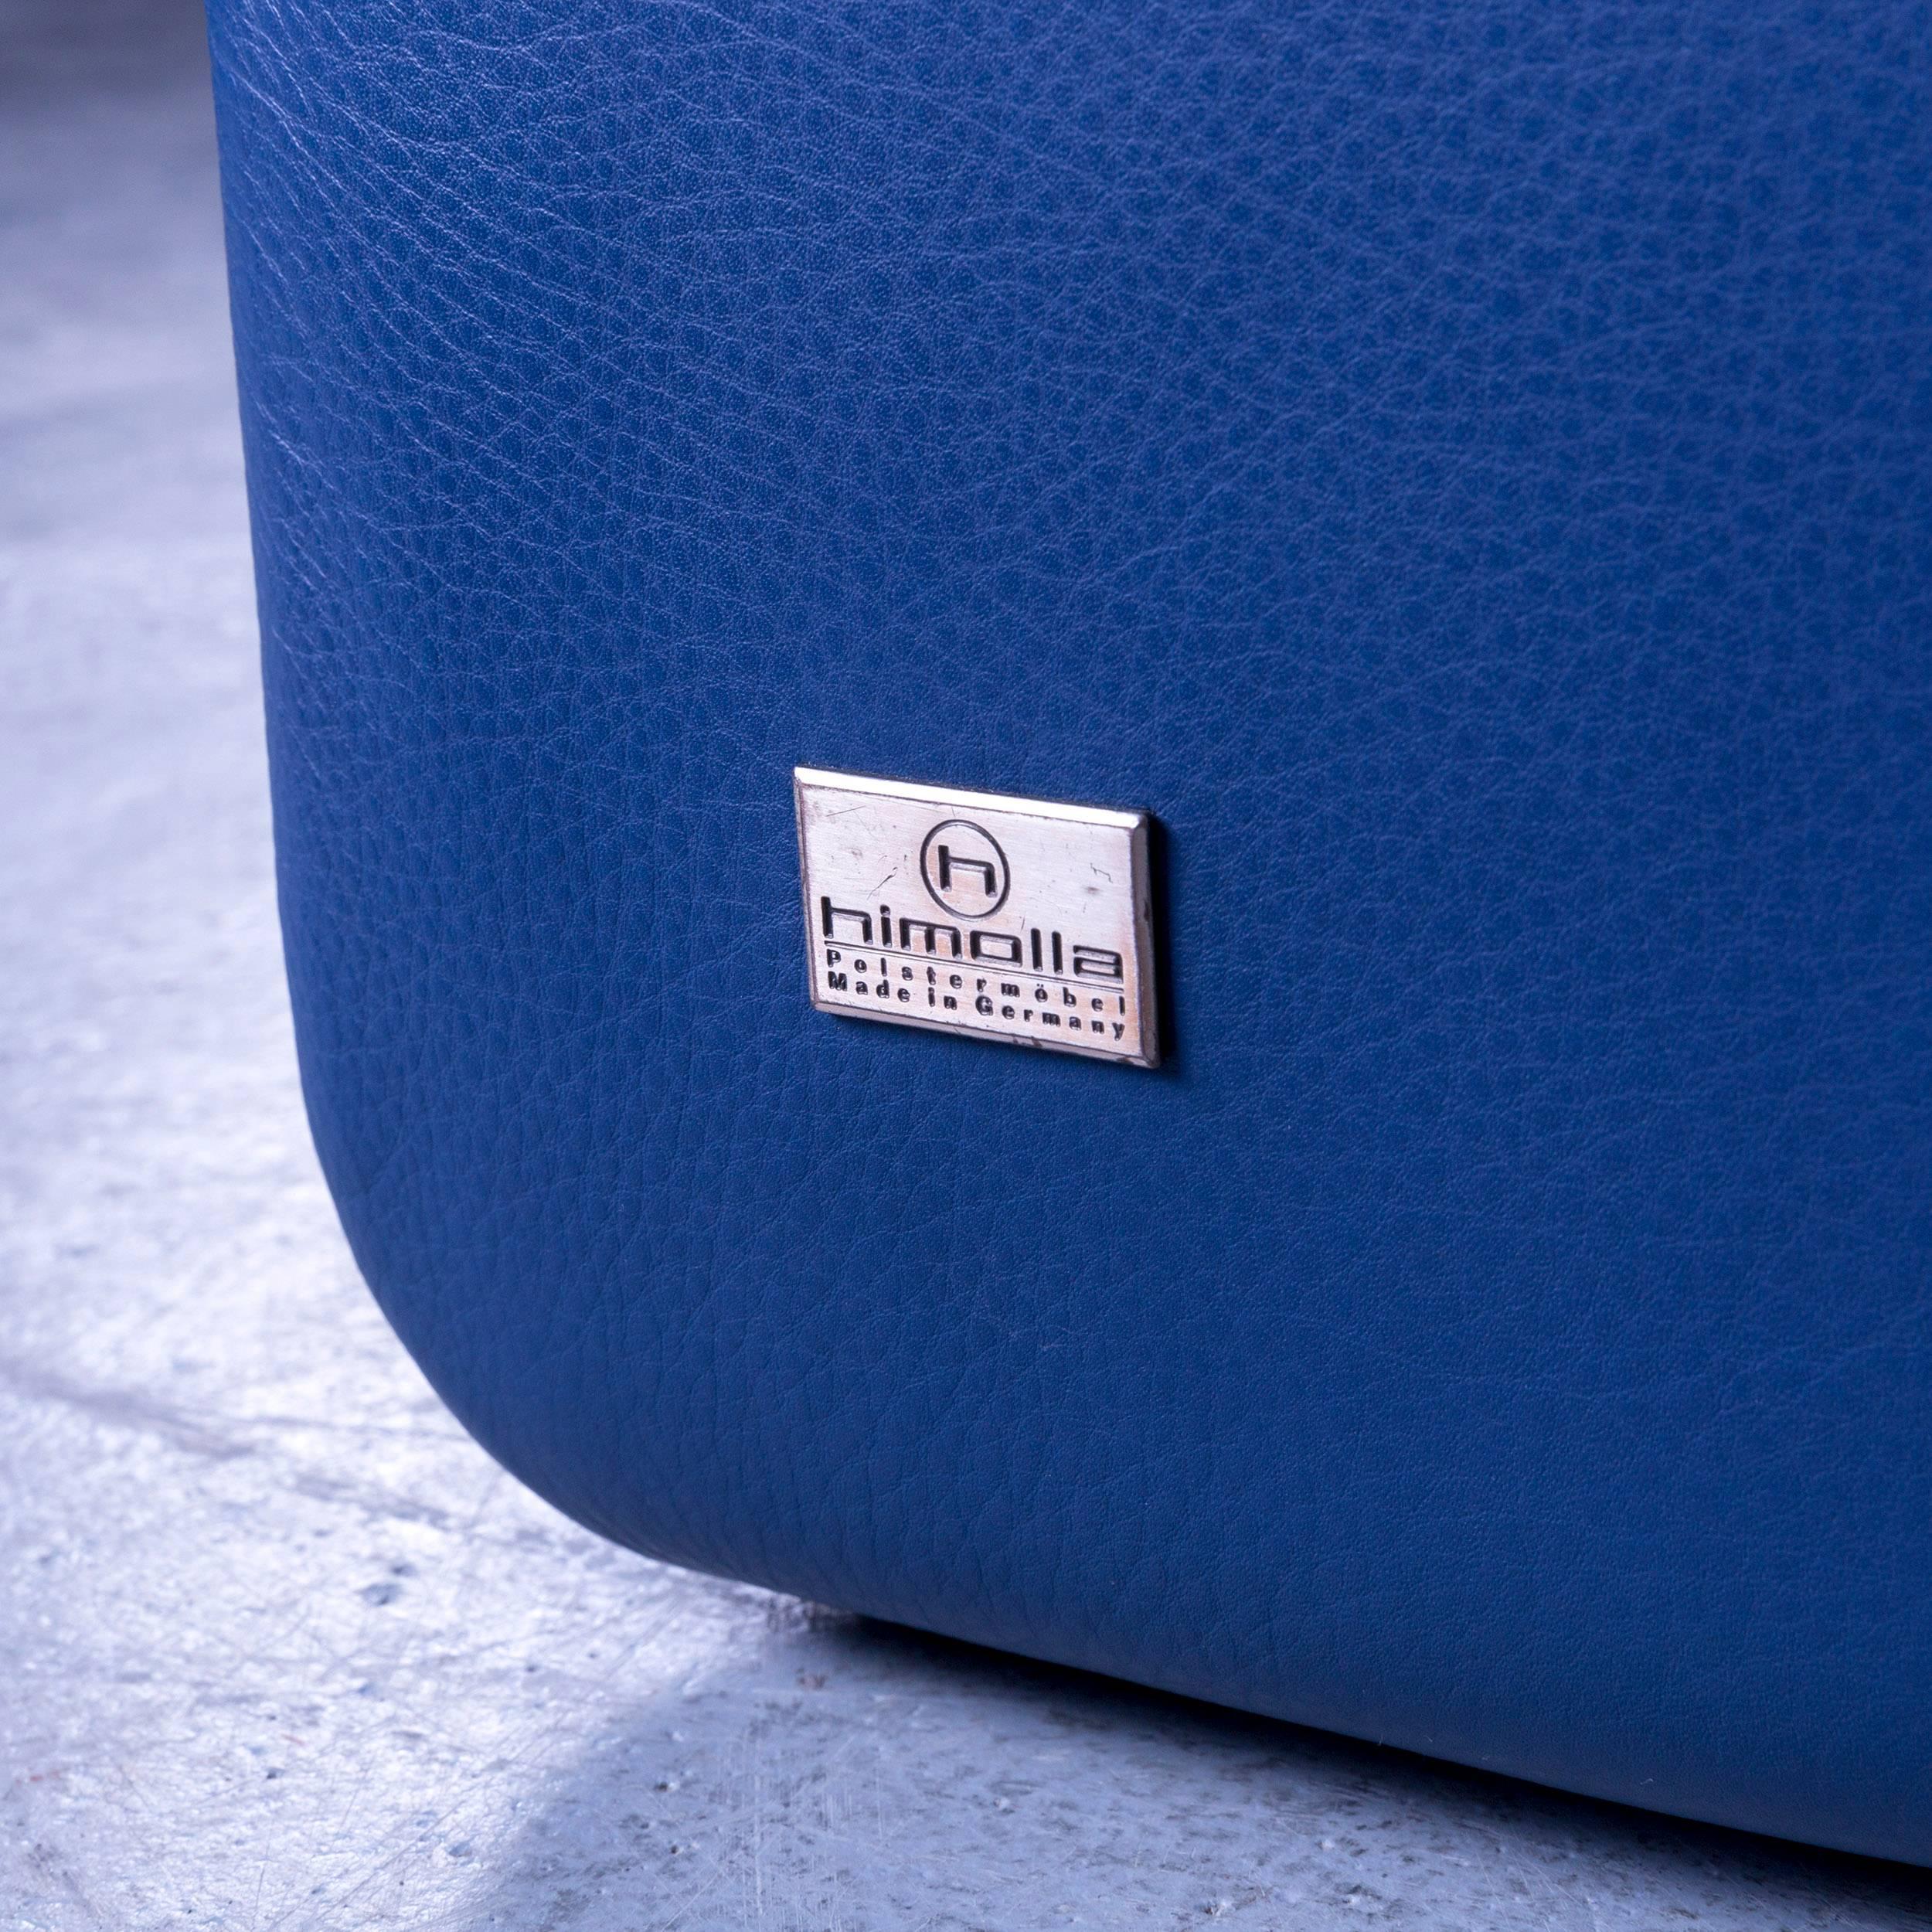 Himolla Leather Sofa Blue Three-Seat 2